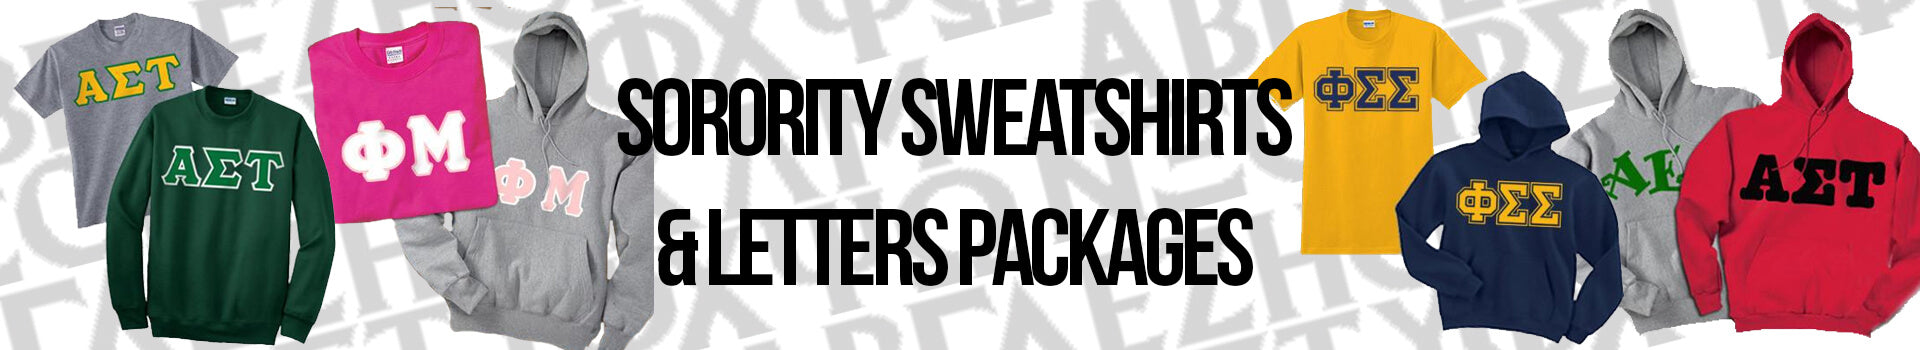 Custom Sorority Greek Sweatshirts Packages & Letters